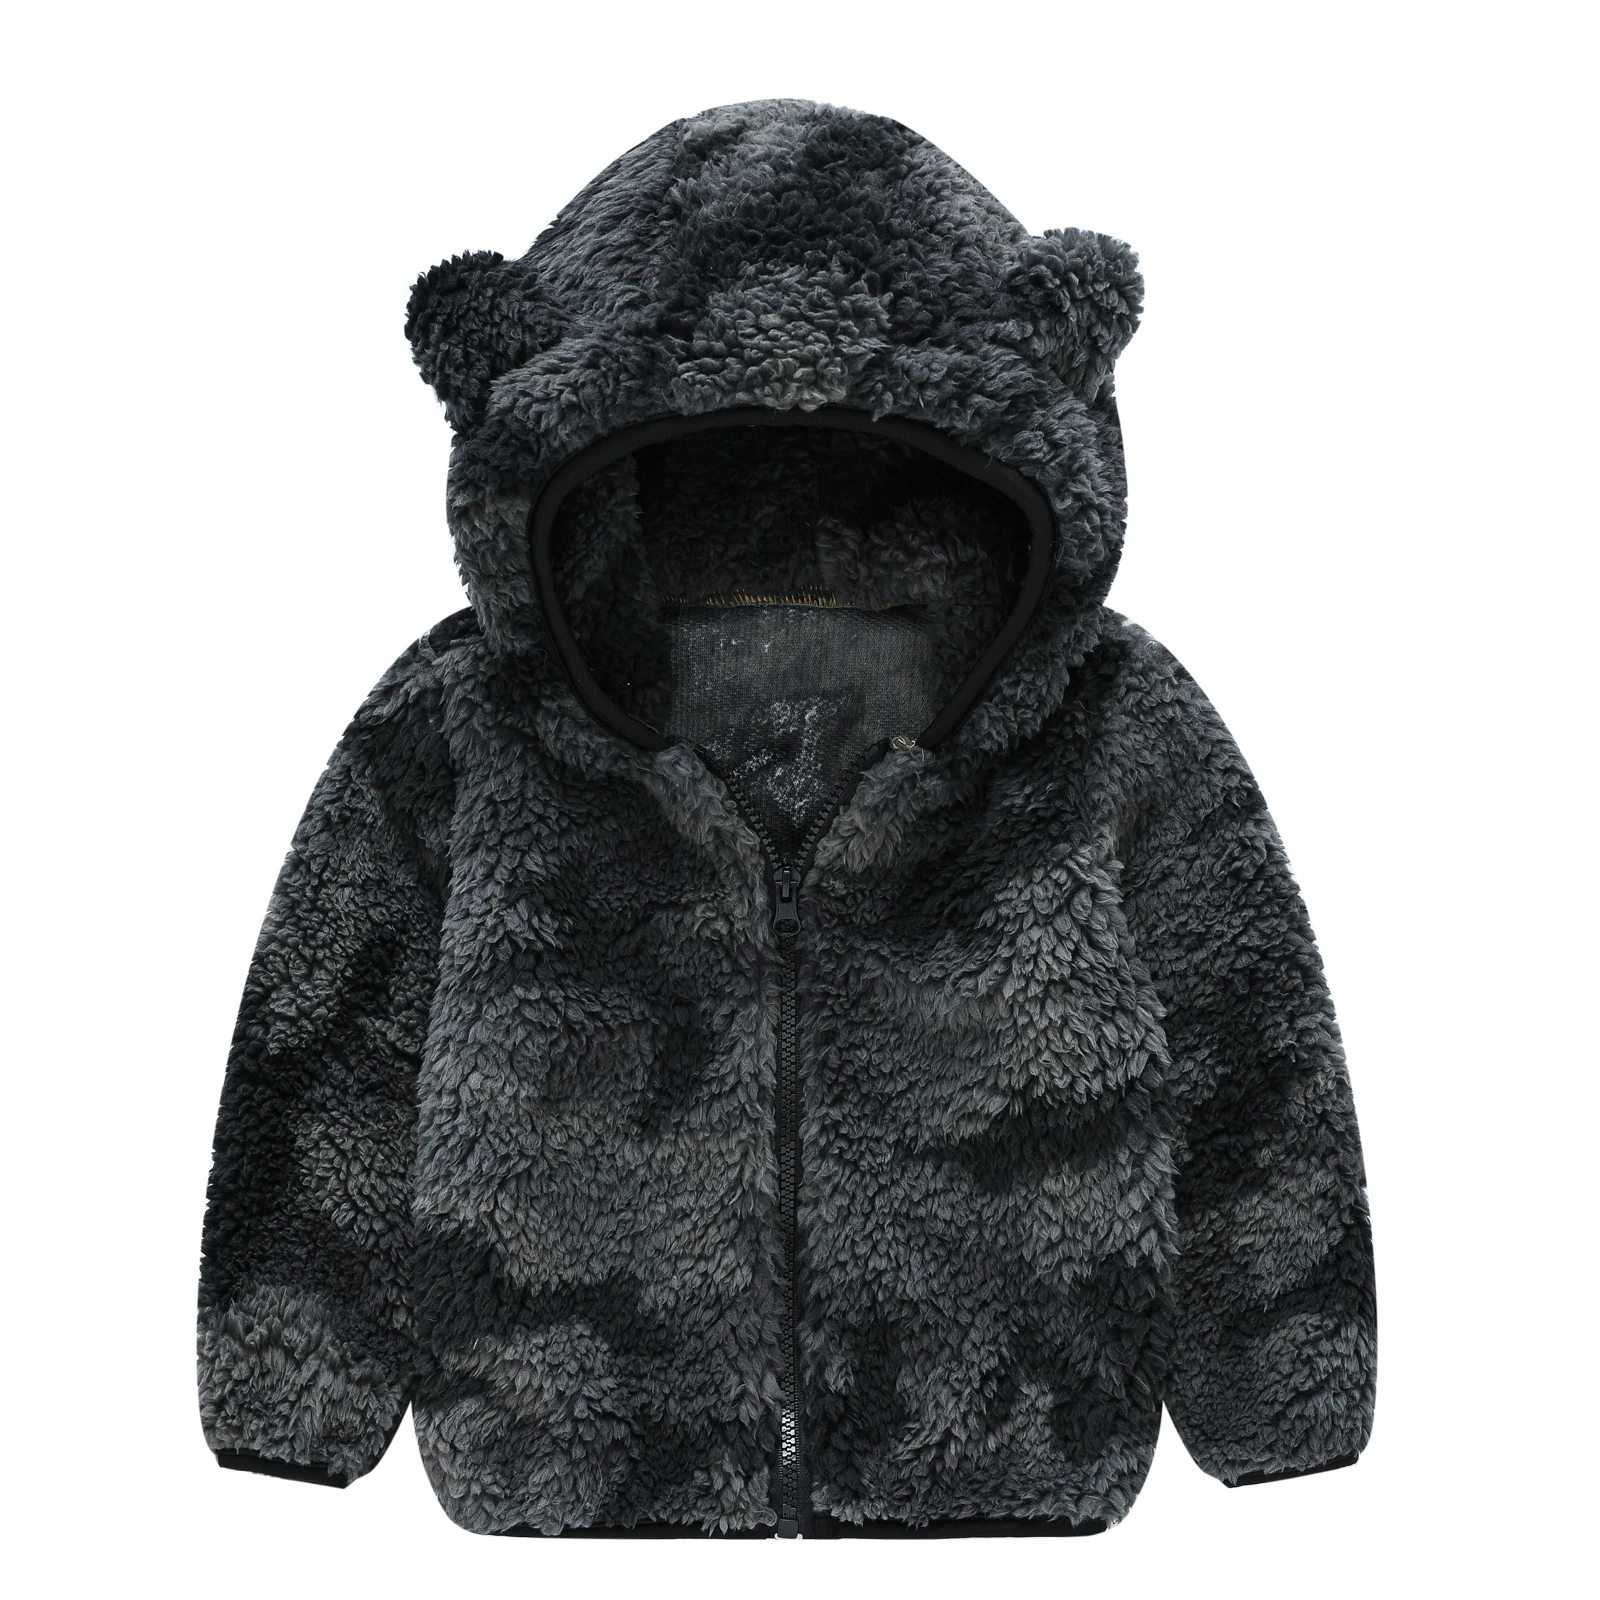 Kluci vlněné kabát s kapucí plná barva zip kabát dětské zimní oblečení